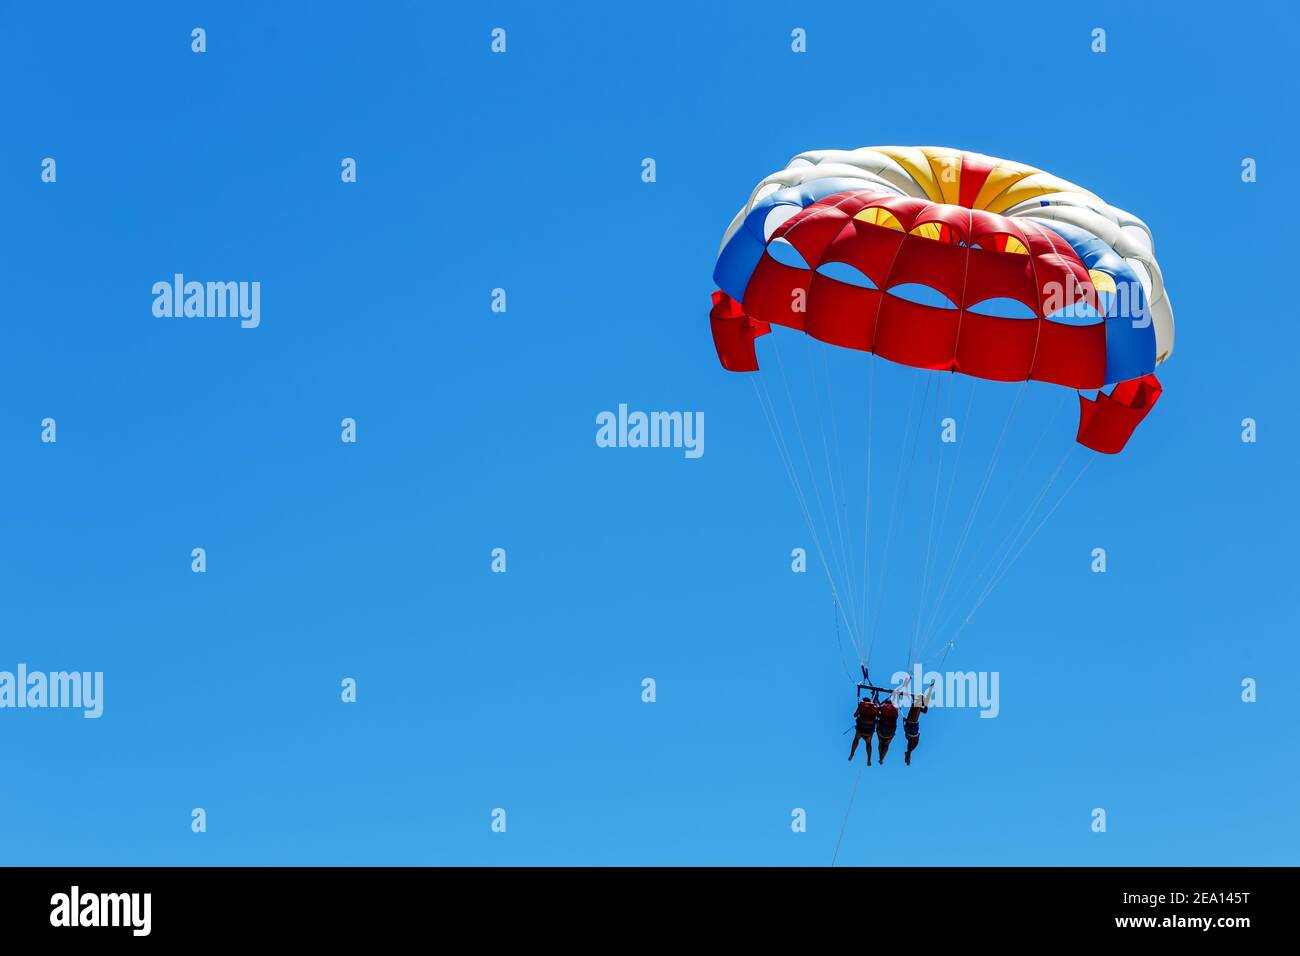 Les parachutistes volent dans le ciel bleu. Parachutisme d'activité Banque D'Images